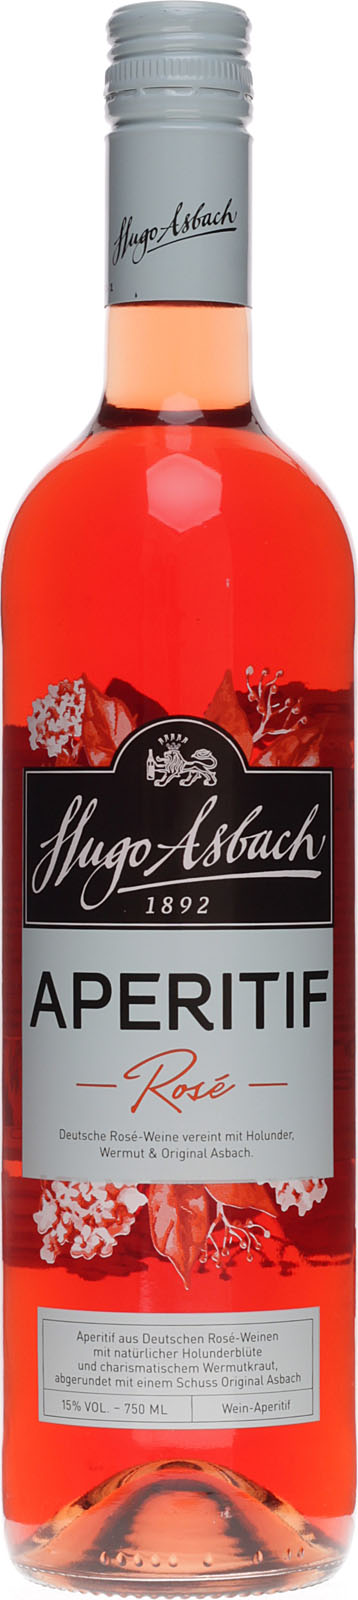 Vol. % 0,75 Liter 15 Rose Asbach fruchtige aus Aperitif